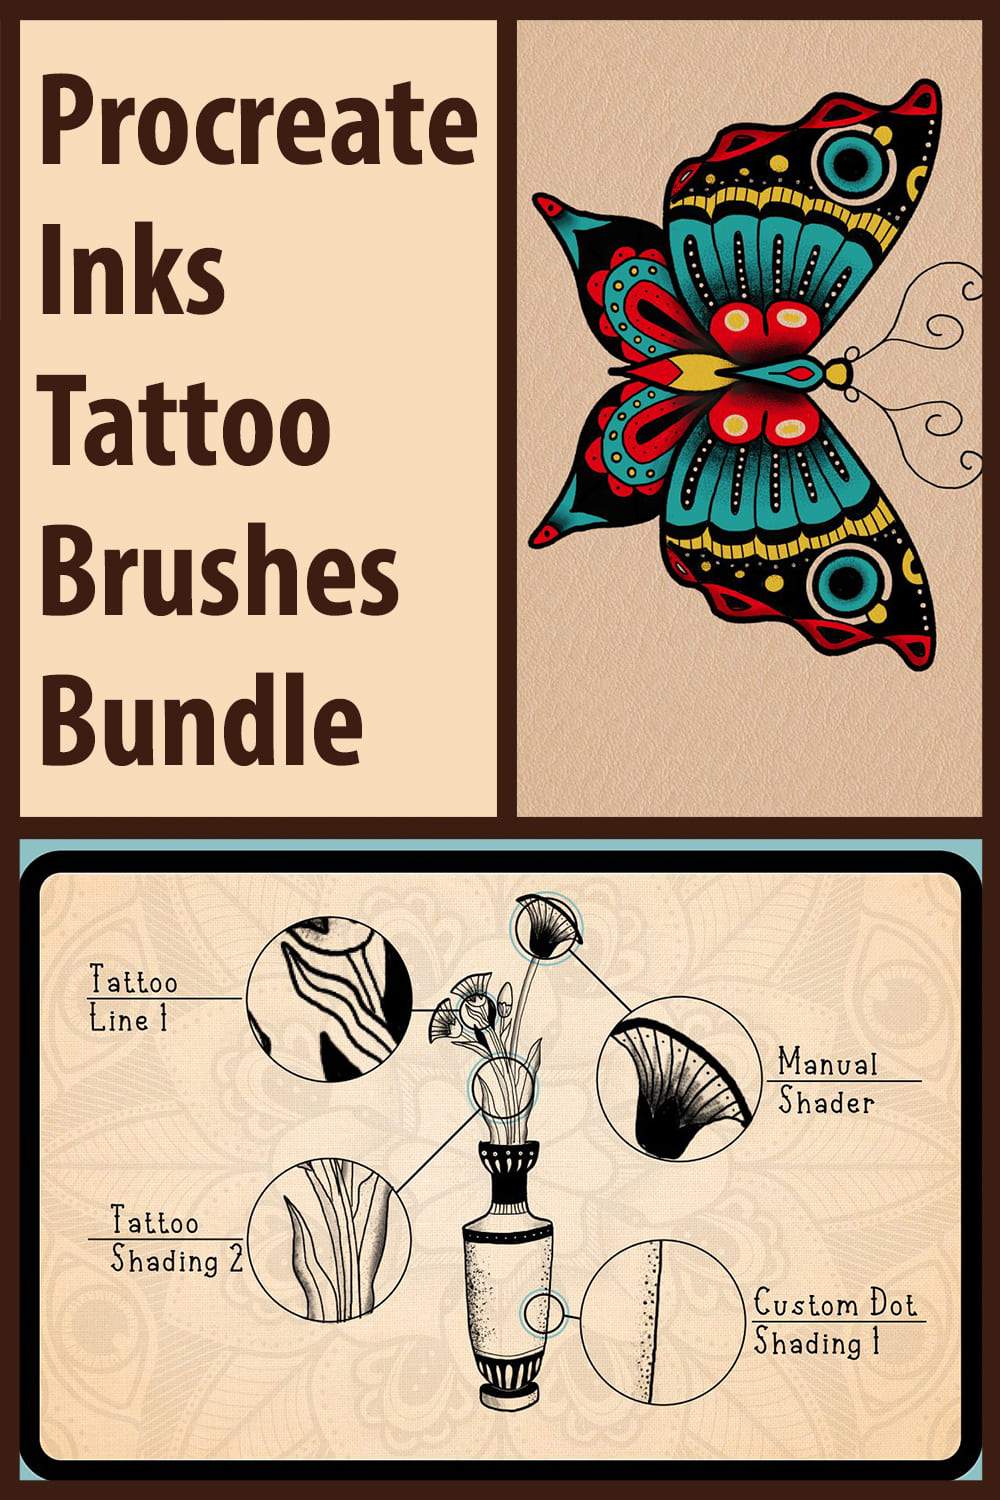 Procreate Inks Tattoo Brushes Bundle Pinterest.